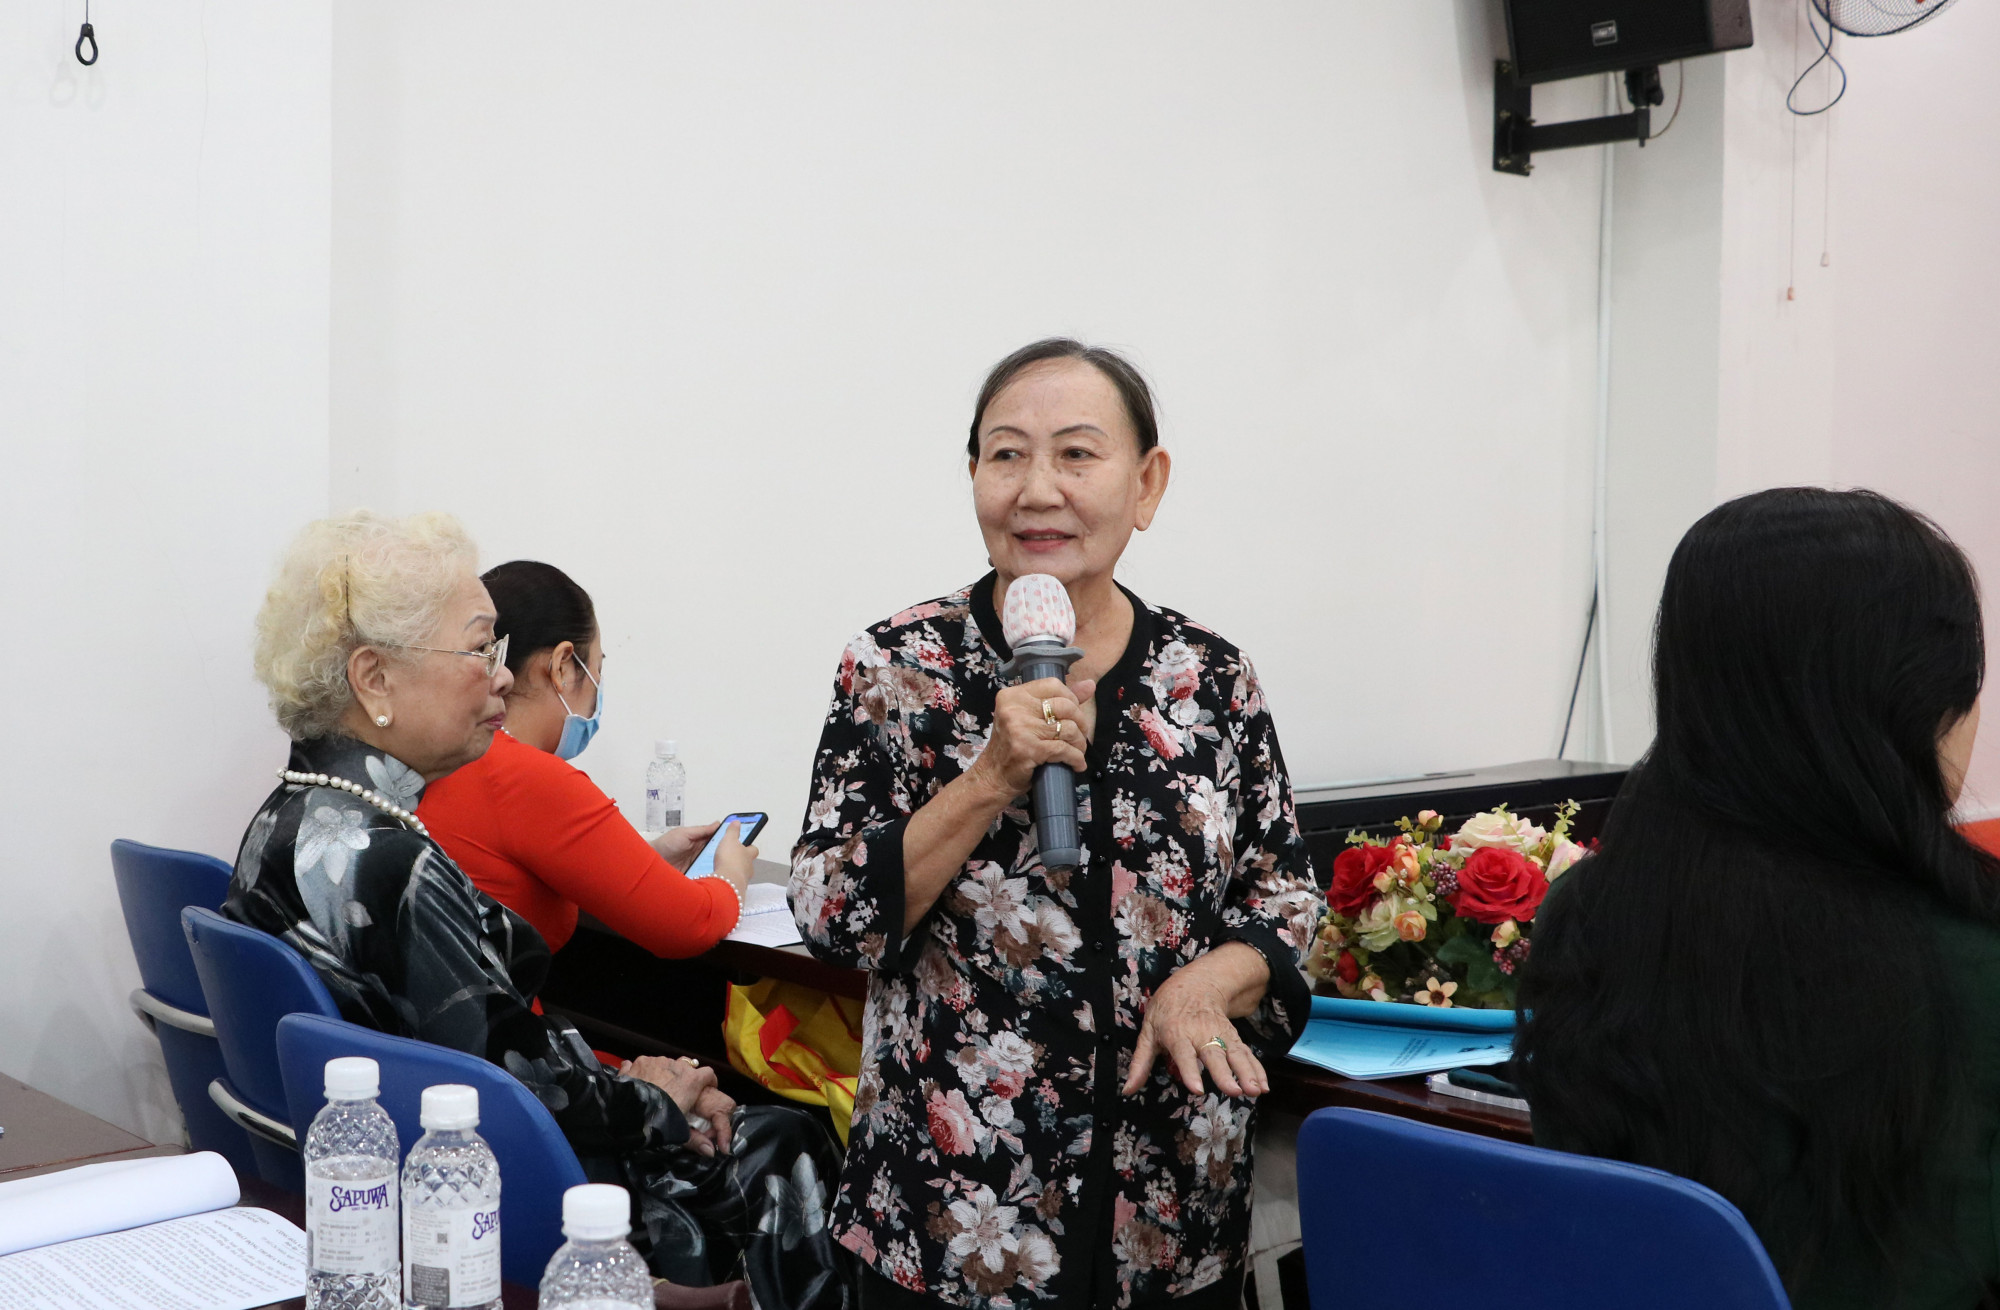 Bà Đoàn Lê Hương - Chủ tịch Danh dự Hội Phụ nữ Từ thiện TP.HCM bày tỏ lòng biết ơn khi đứng trước nhiều khó khăn, các Hội viên vẫn luôn đồng lòng, gắn kết để hoàn thành sứ mệnh của mình